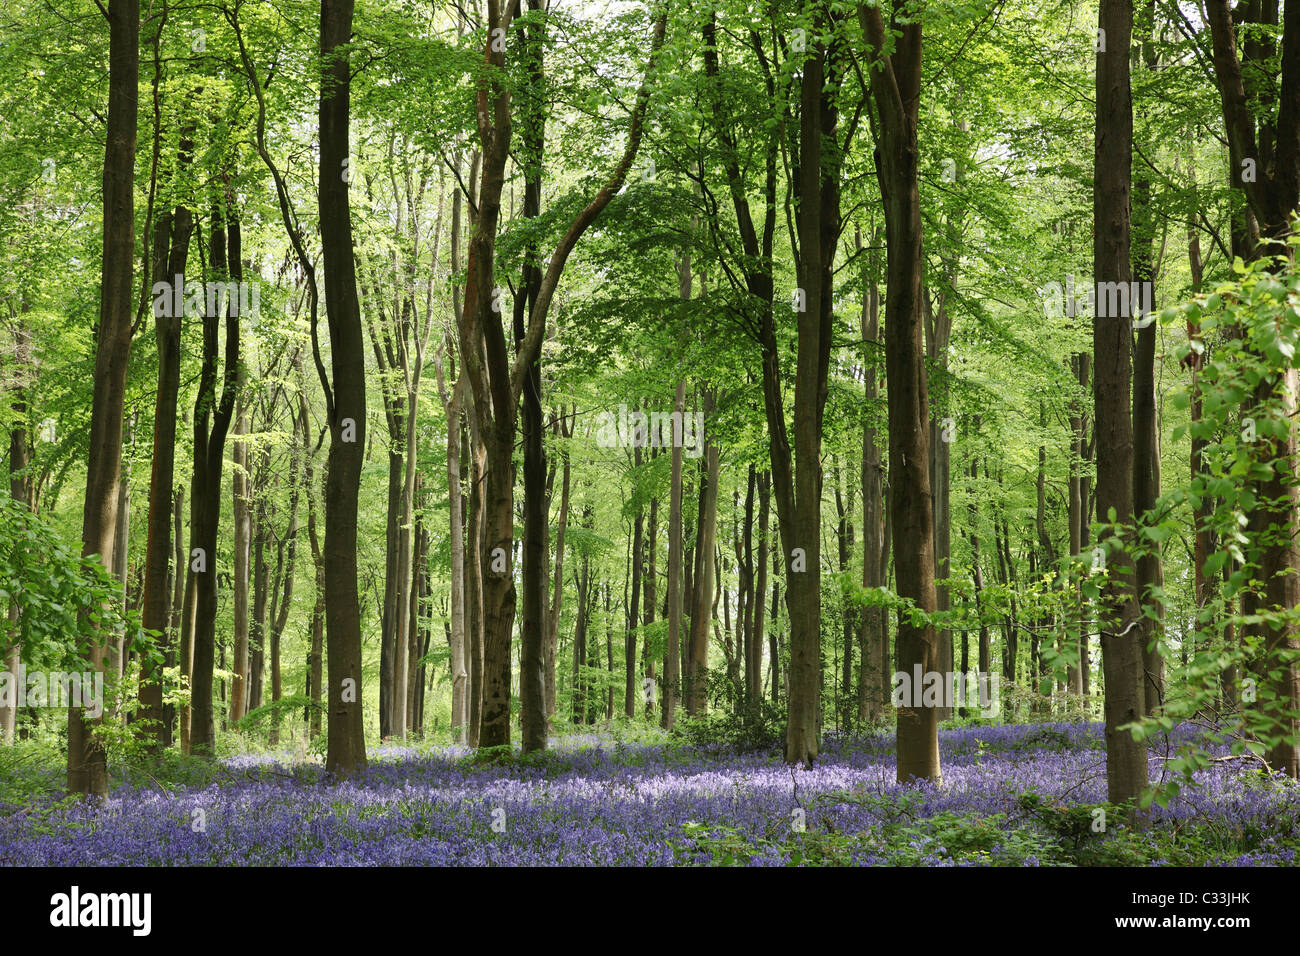 Bleuets fleurissent dans West Woods bluebell Wood au printemps, Marlborough, Wiltshire, Angleterre, Royaume-Uni Banque D'Images